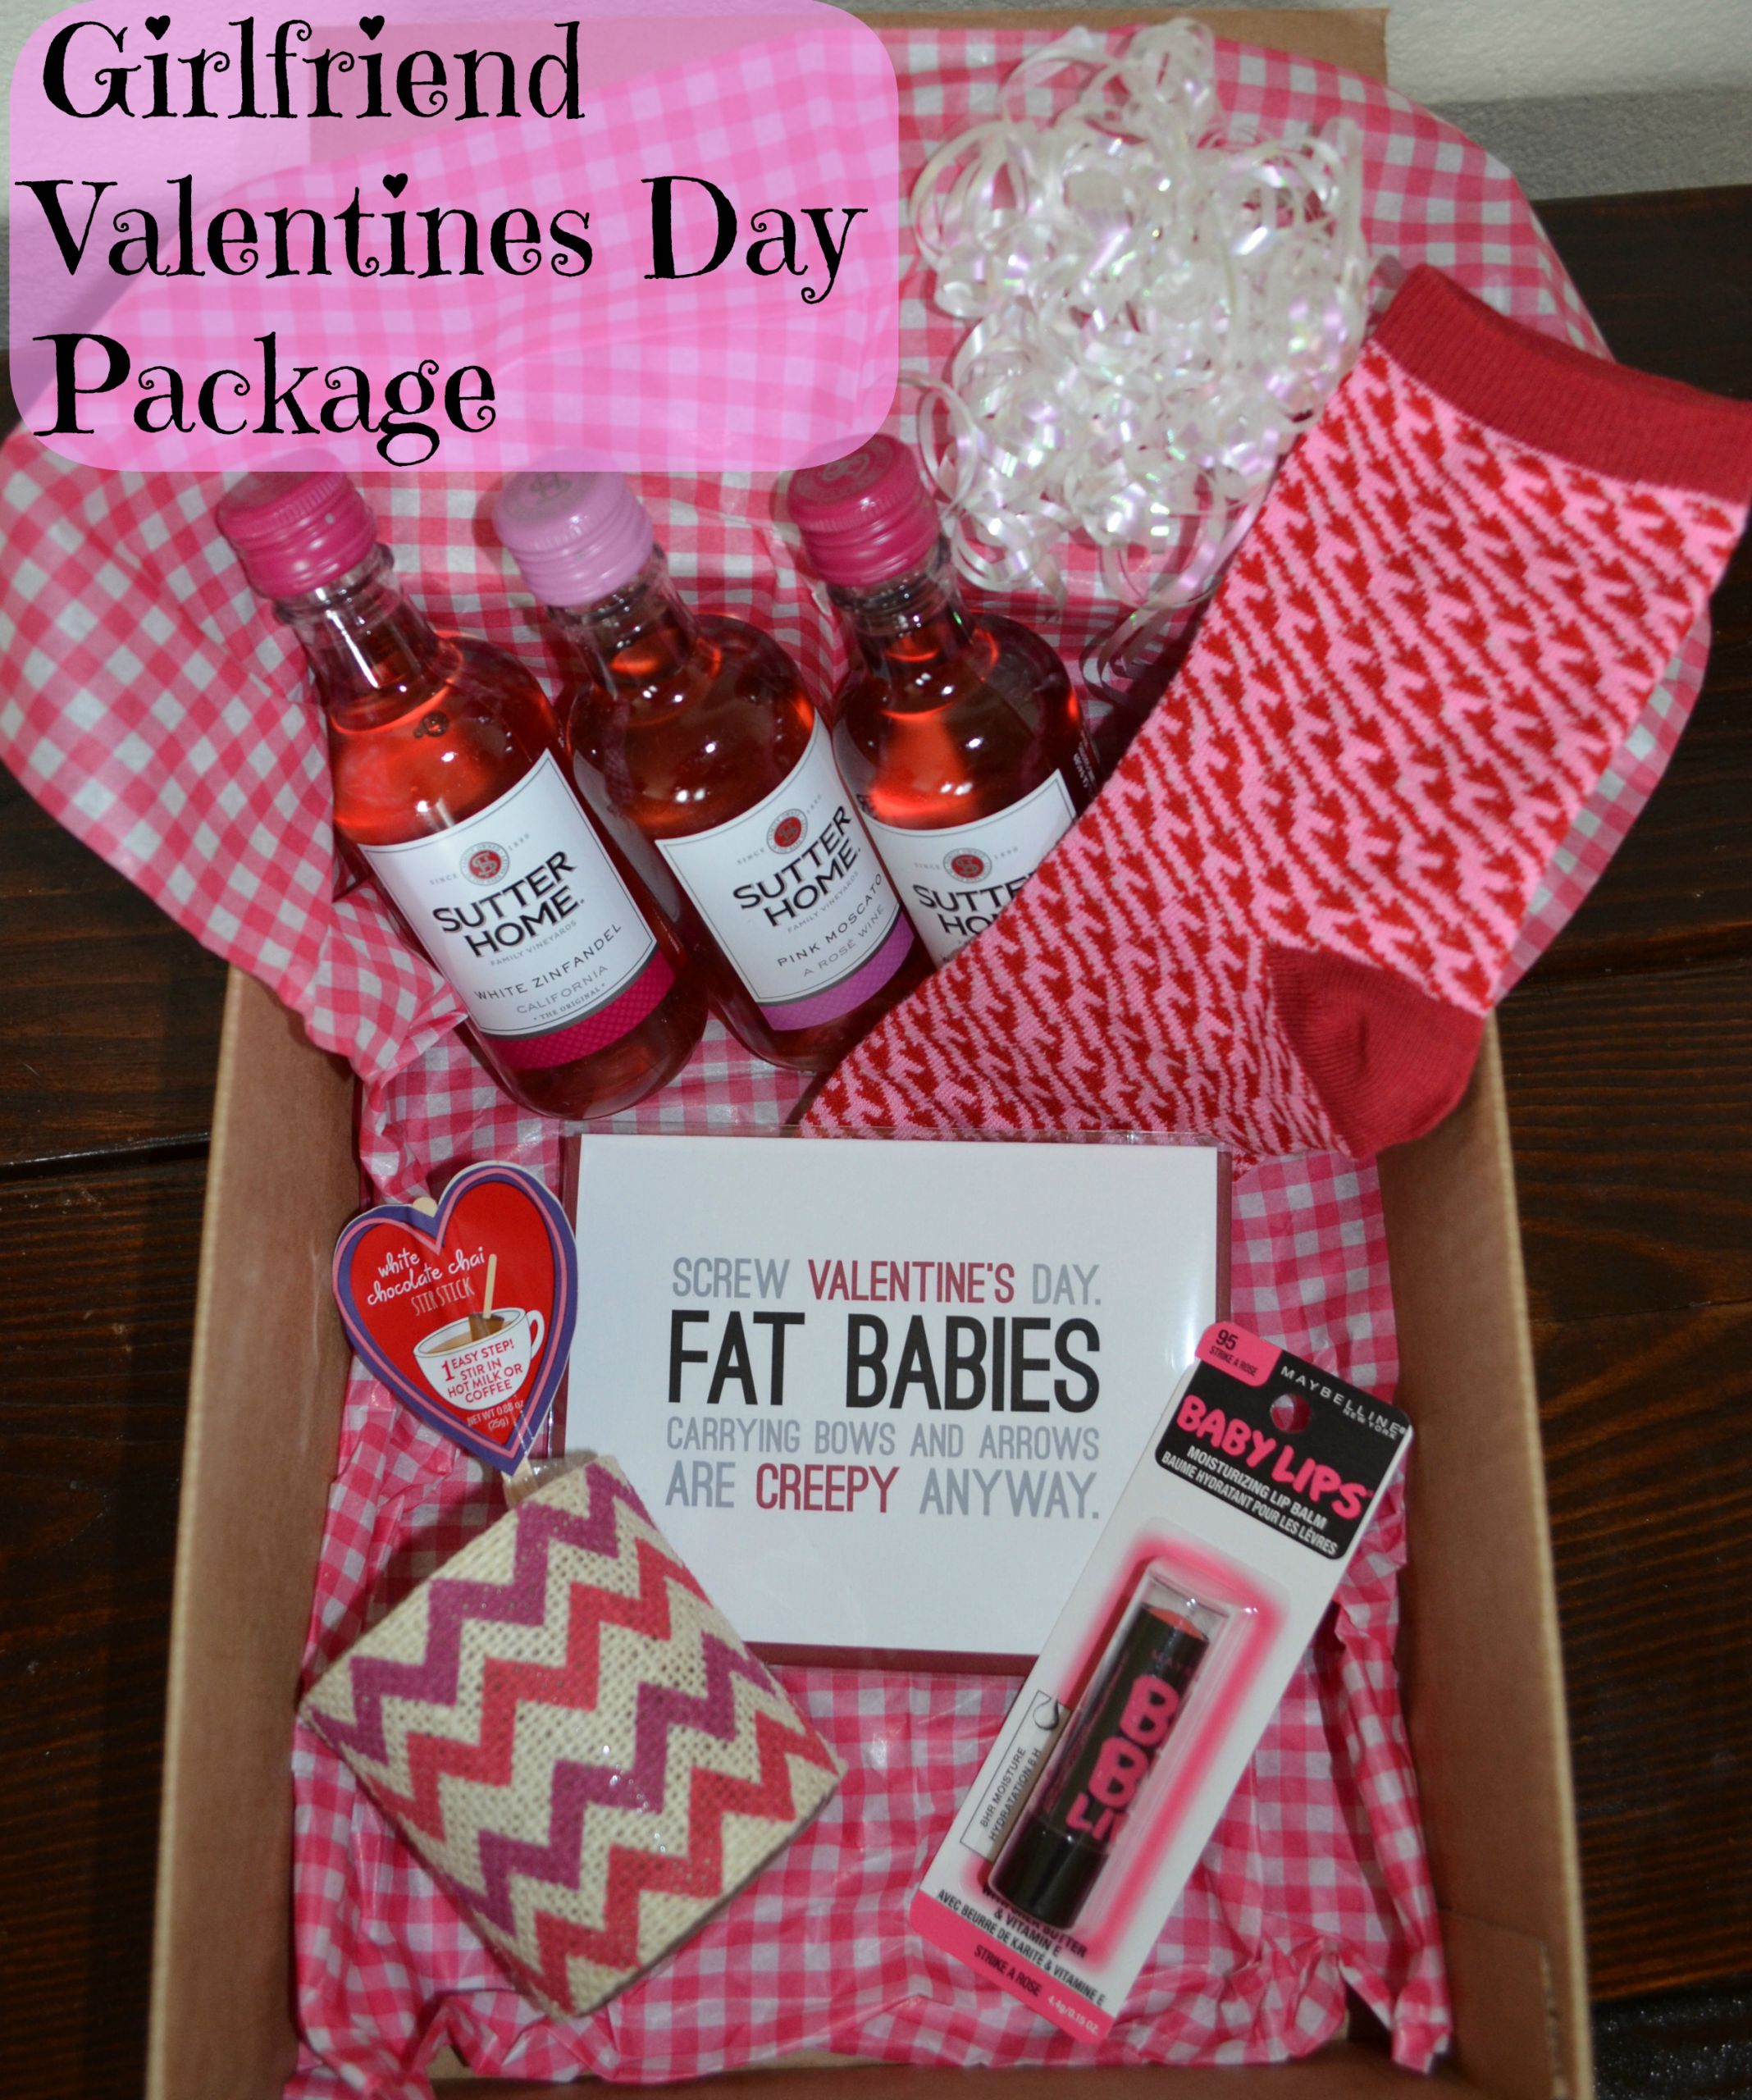 Cute Valentines Gift Ideas For Boyfriend
 24 LOVELY VALENTINE S DAY GIFTS FOR YOUR BOYFRIEND